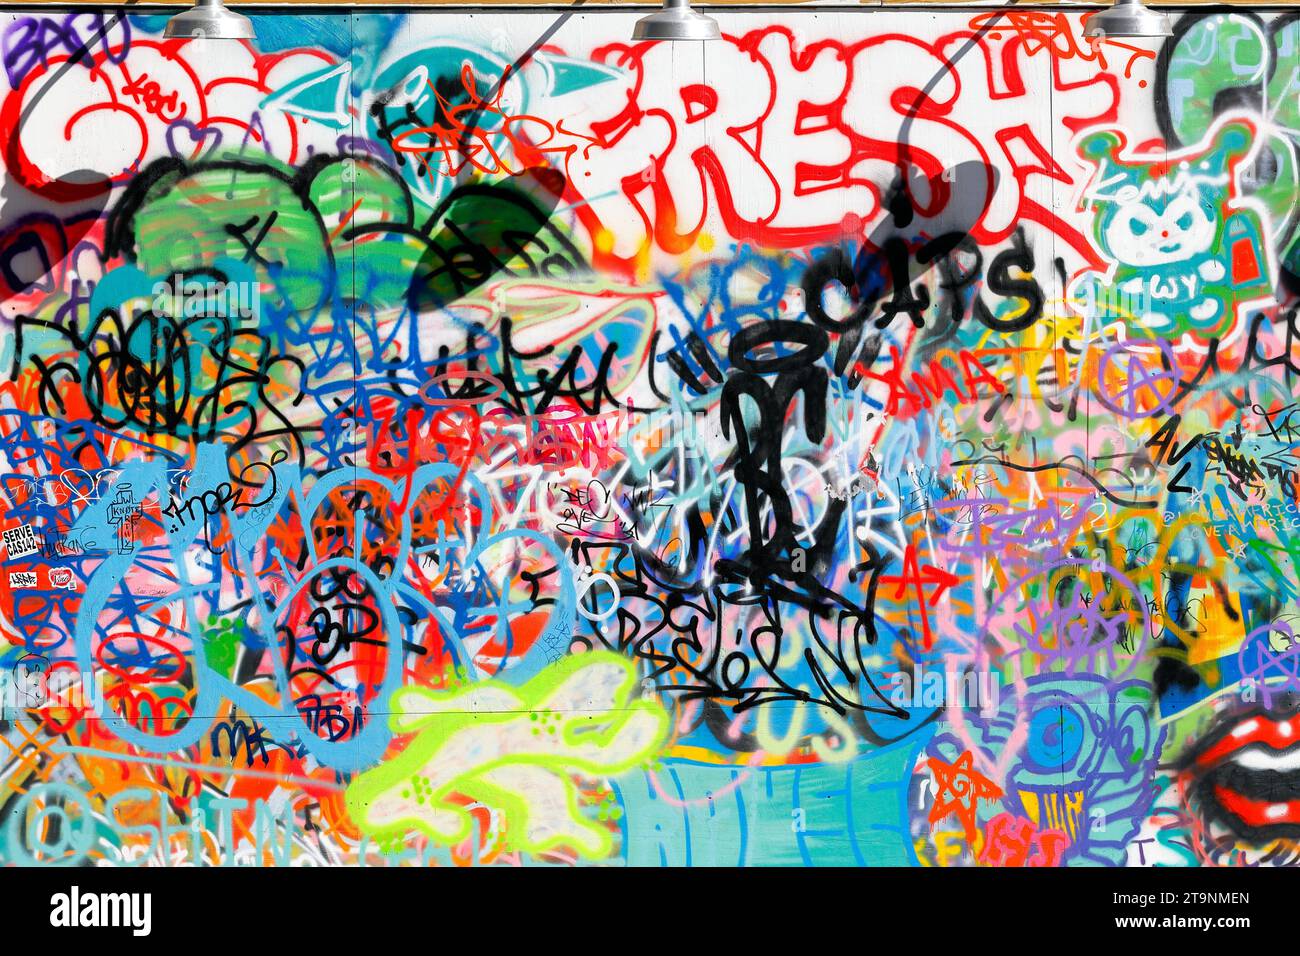 Helle, farbenfrohe Graffiti, Tagging, Vandalismus und antisoziales Verhalten an einer Stadtmauer. Stockfoto